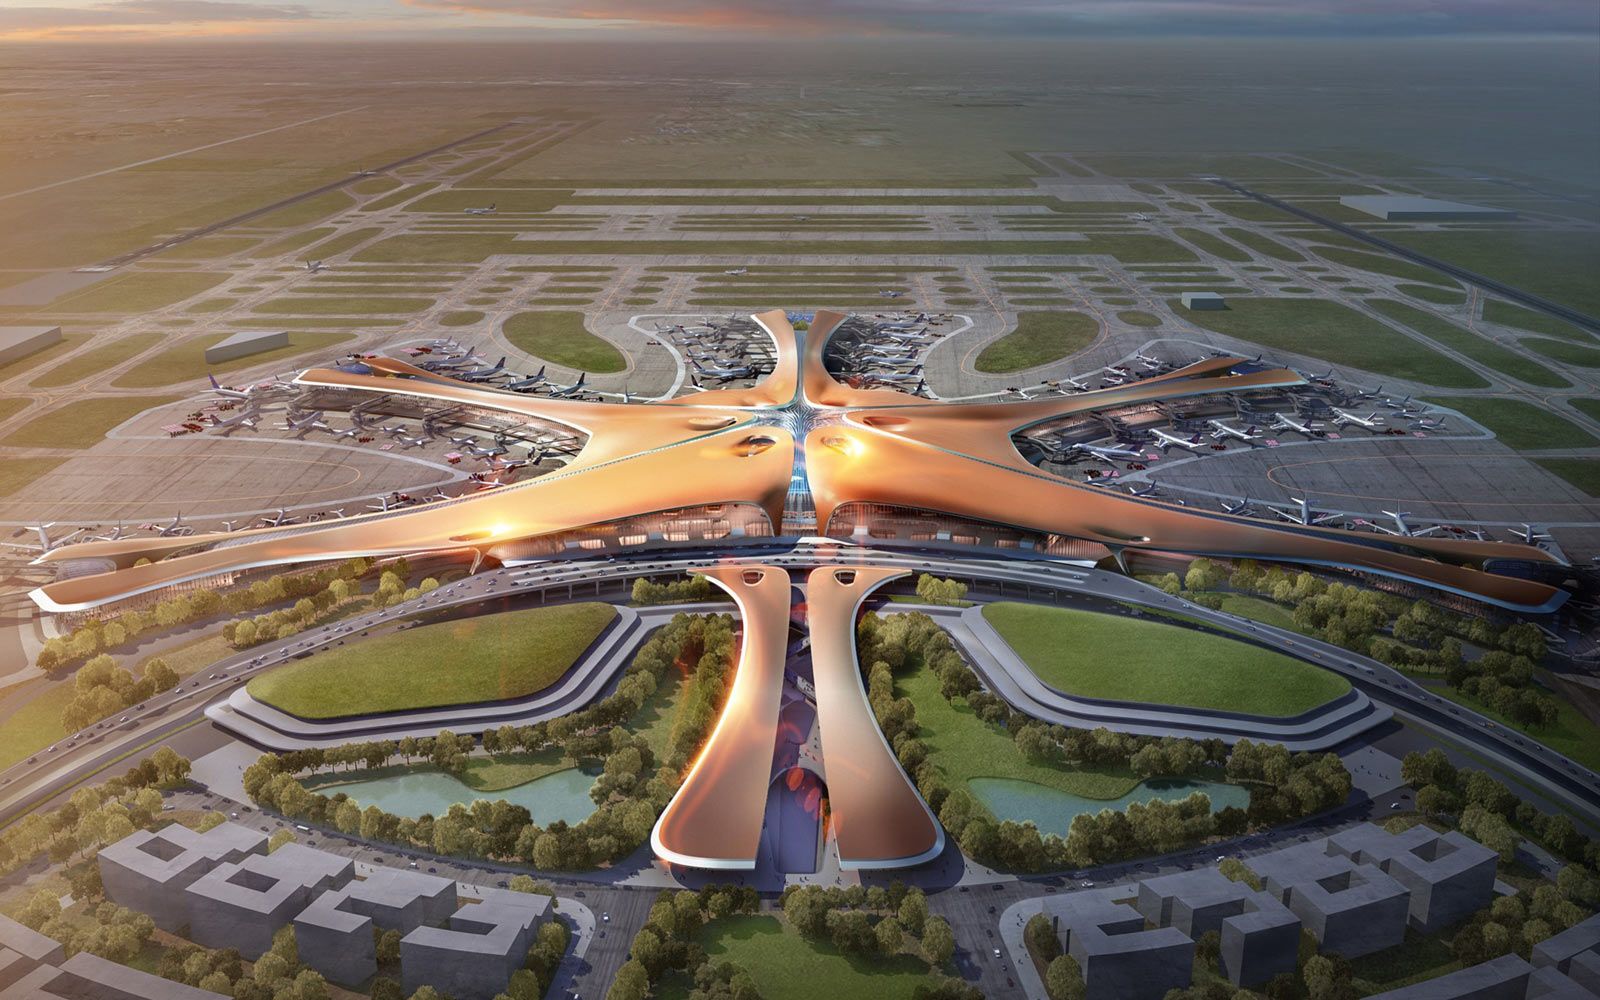 Pekingin lentokentän terminaalirakennus, Zaha Hadid -arkkitehdit